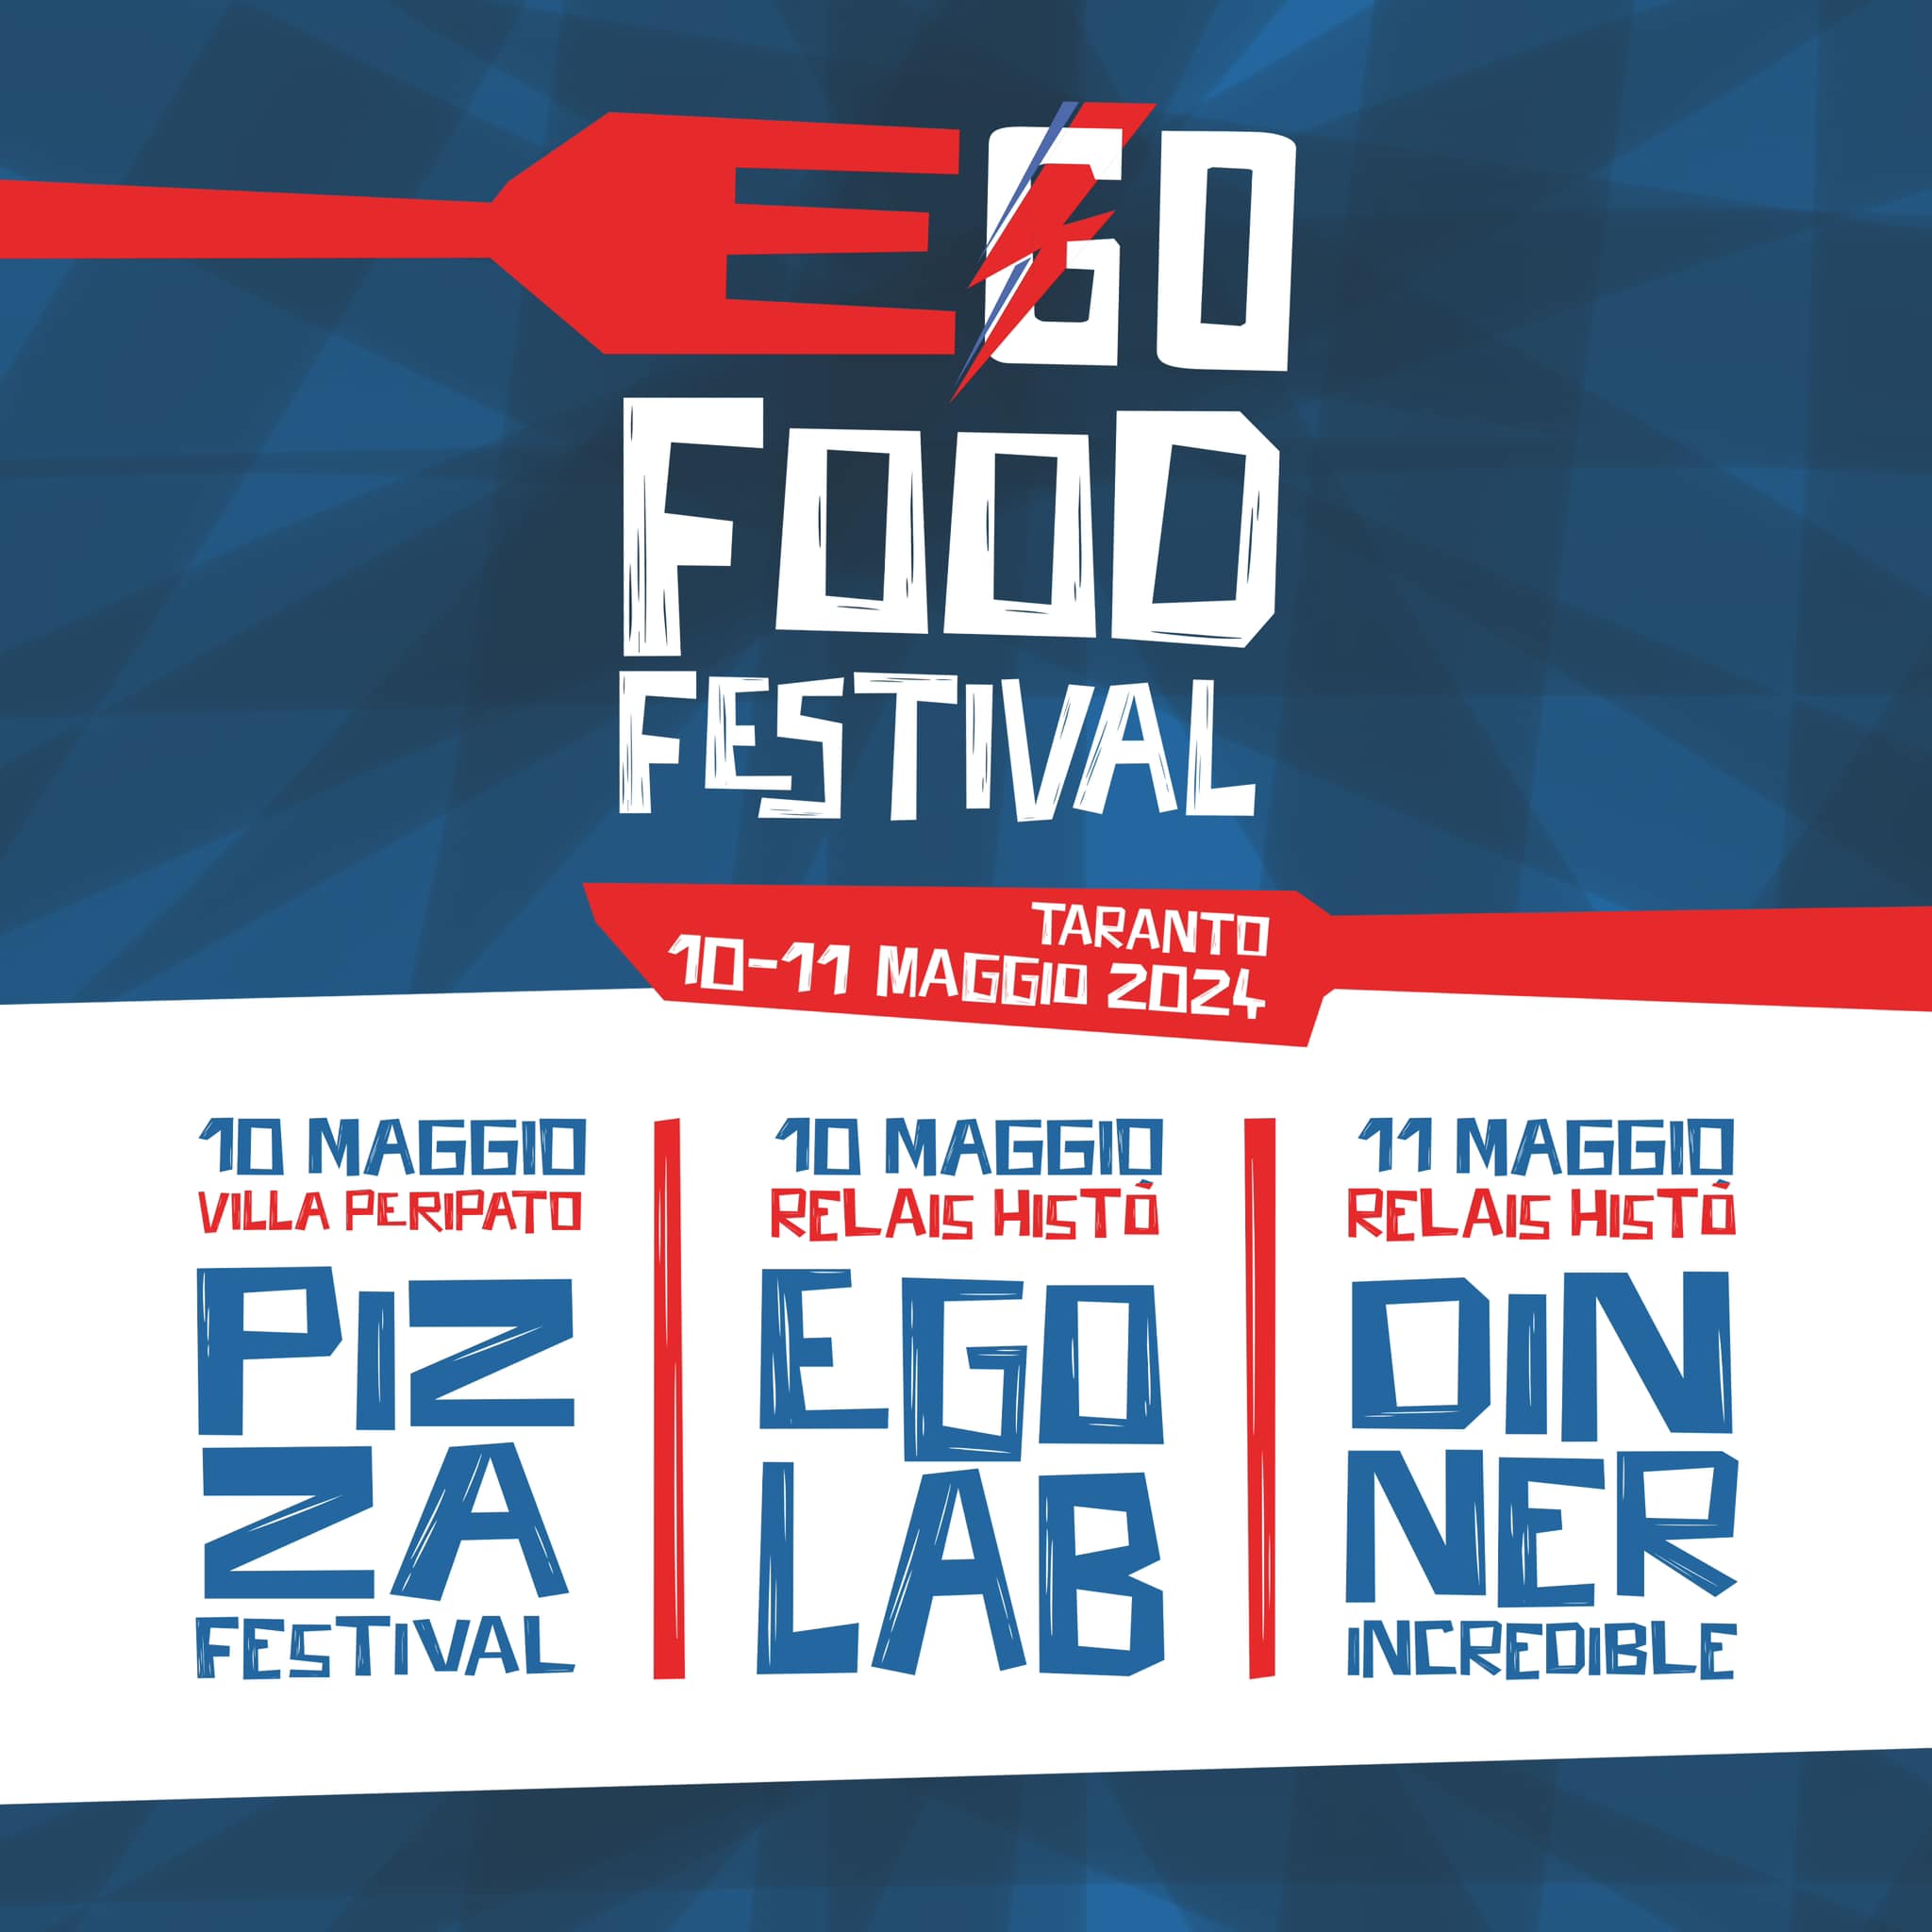 EGO Food Festival